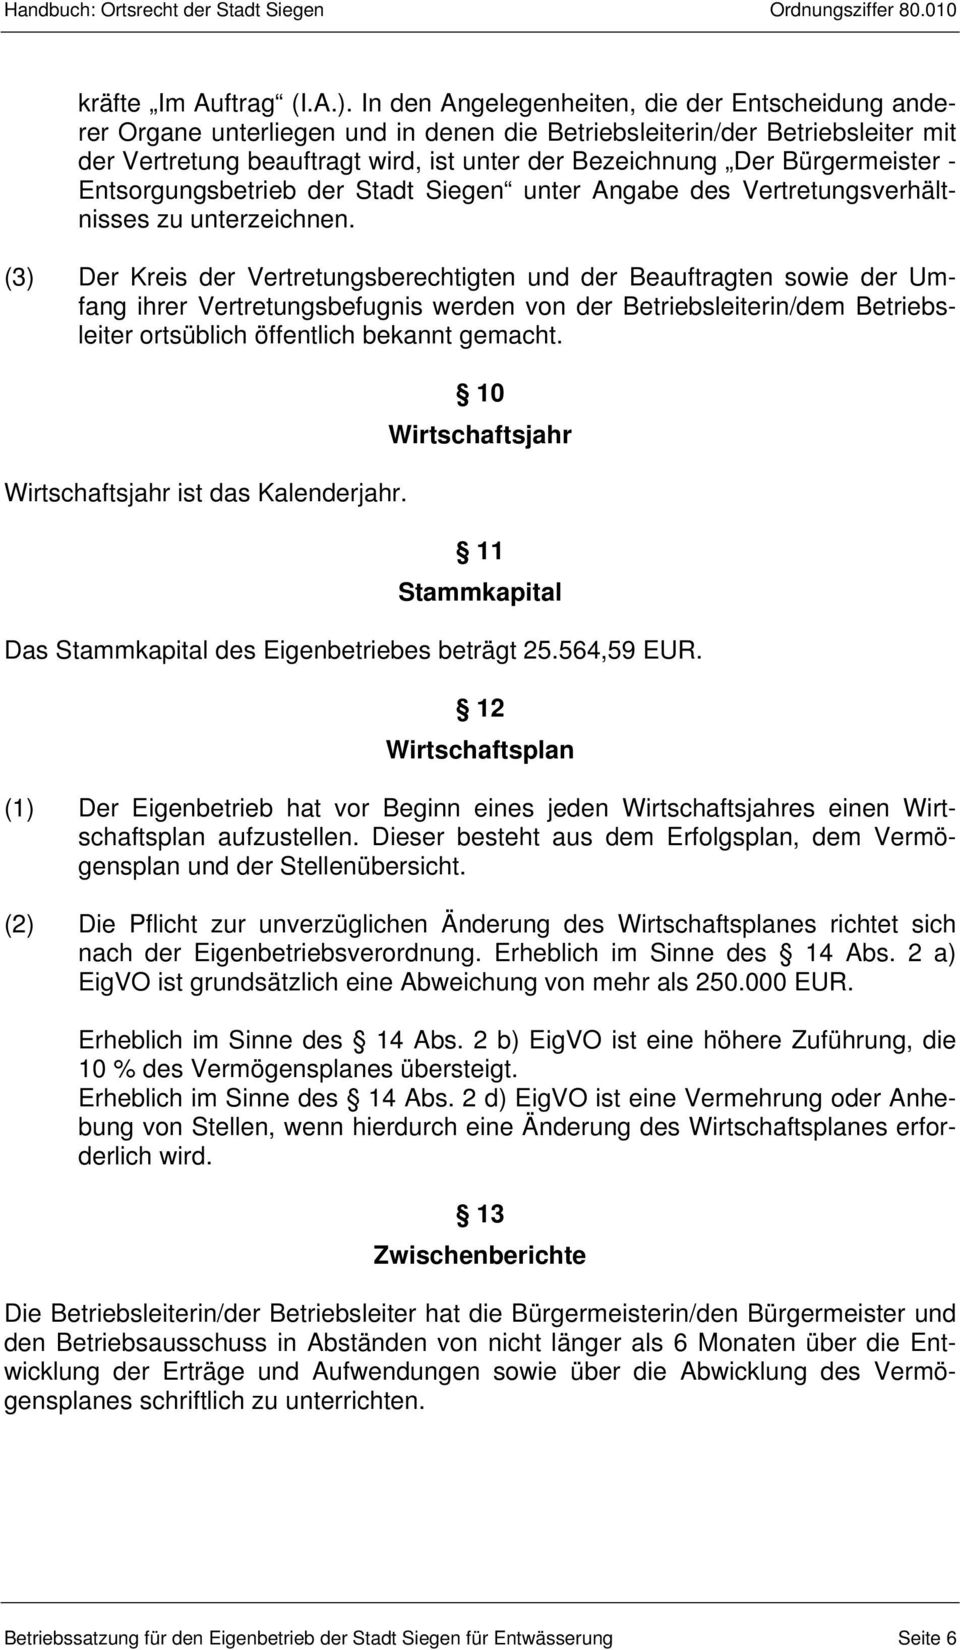 Bürgermeister - Entsorgungsbetrieb der Stadt Siegen unter Angabe des Vertretungsverhältnisses zu unterzeichnen.